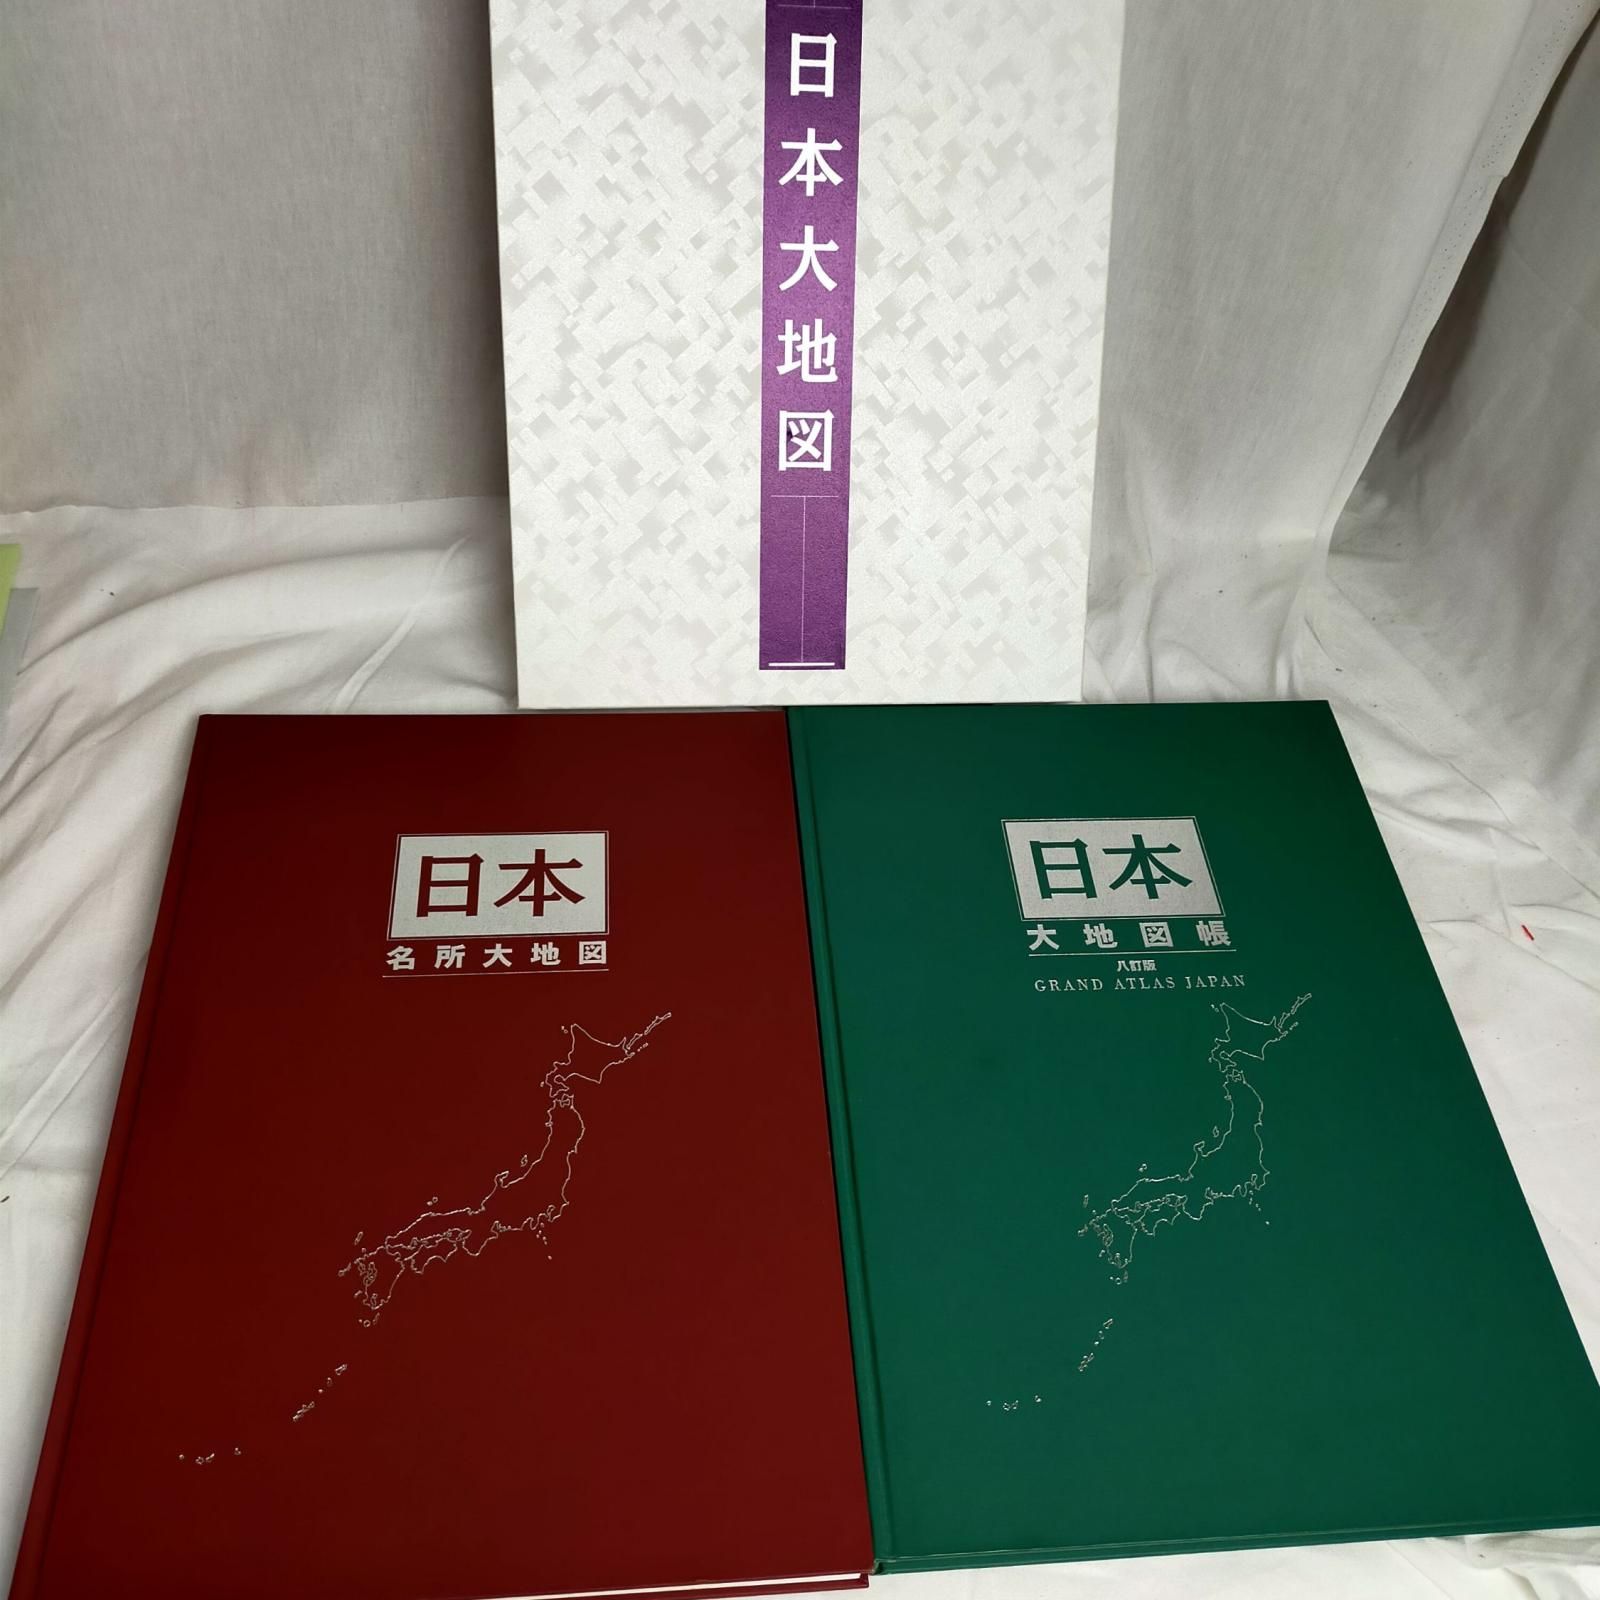 ユーキャン 日本地図セット【中古】 ユーキャン 日本大地図2冊セット 